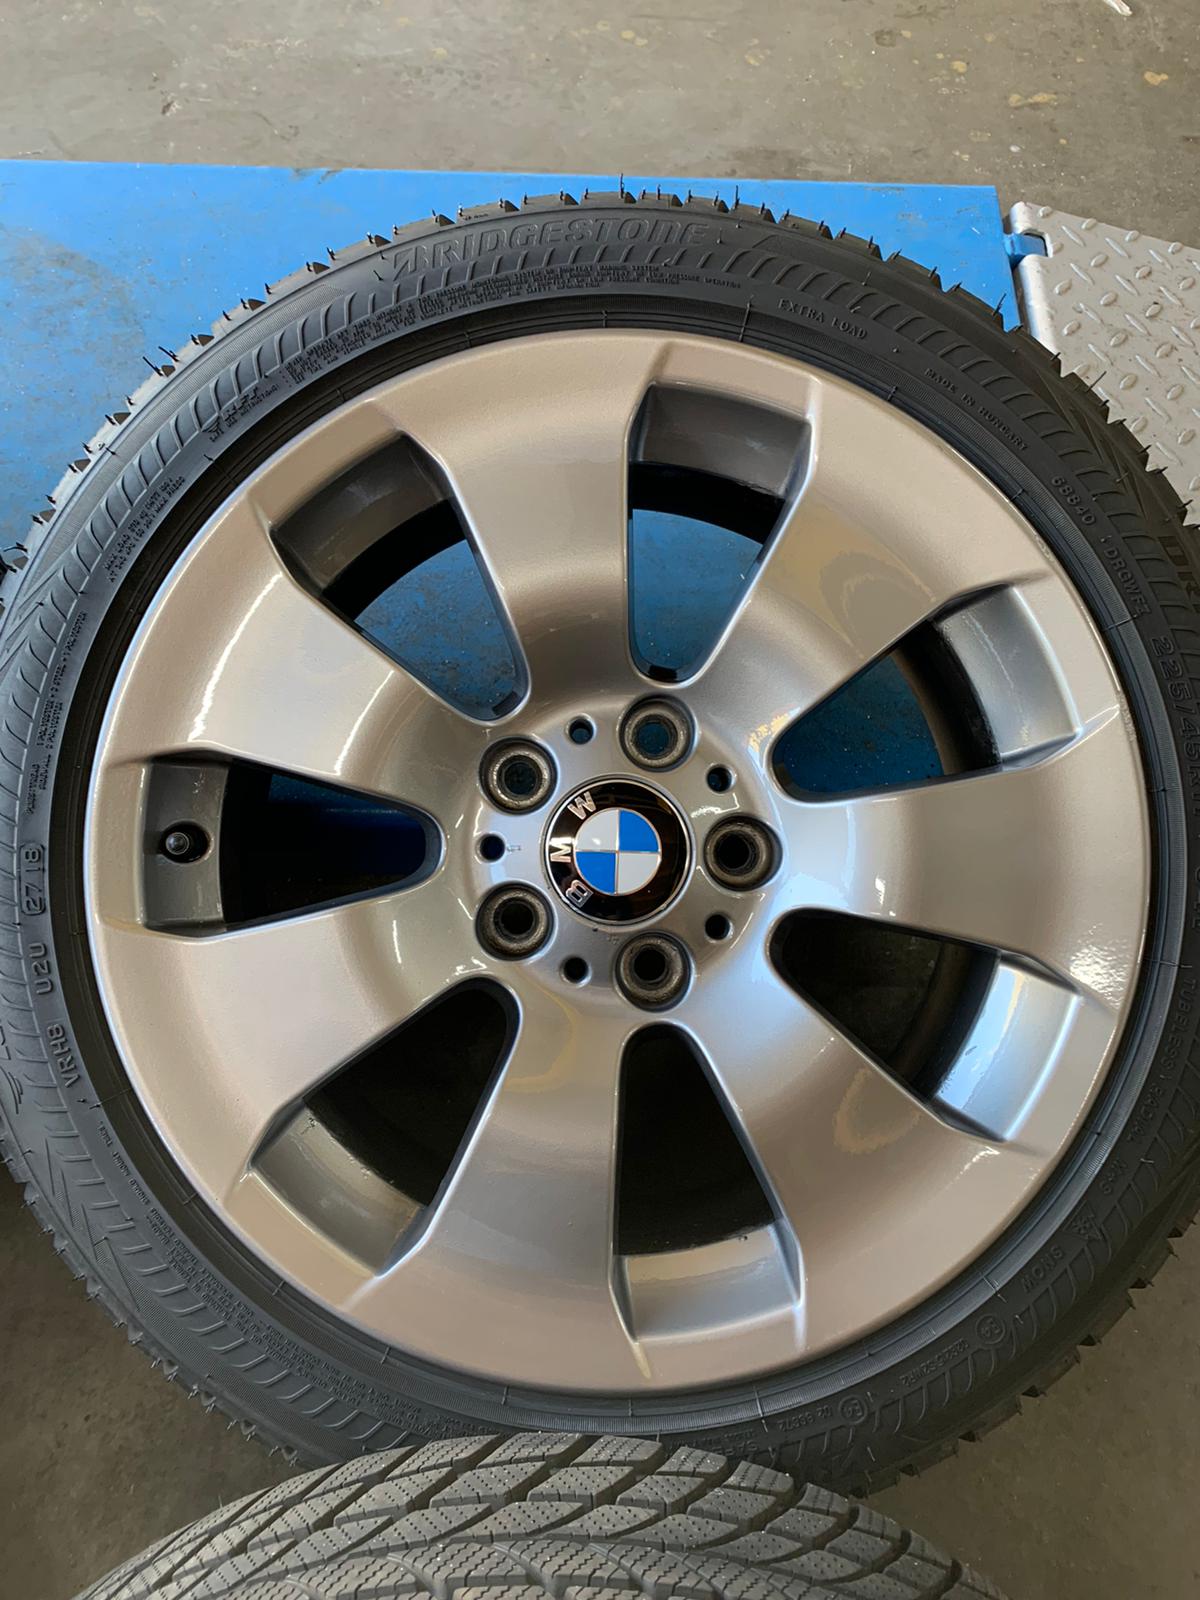 Heb geleerd sensor Beukende Originele BMW 3 Serie E90 F30 17 inch velgen Winter RUNFLAT – BLT Wheels  Dronten